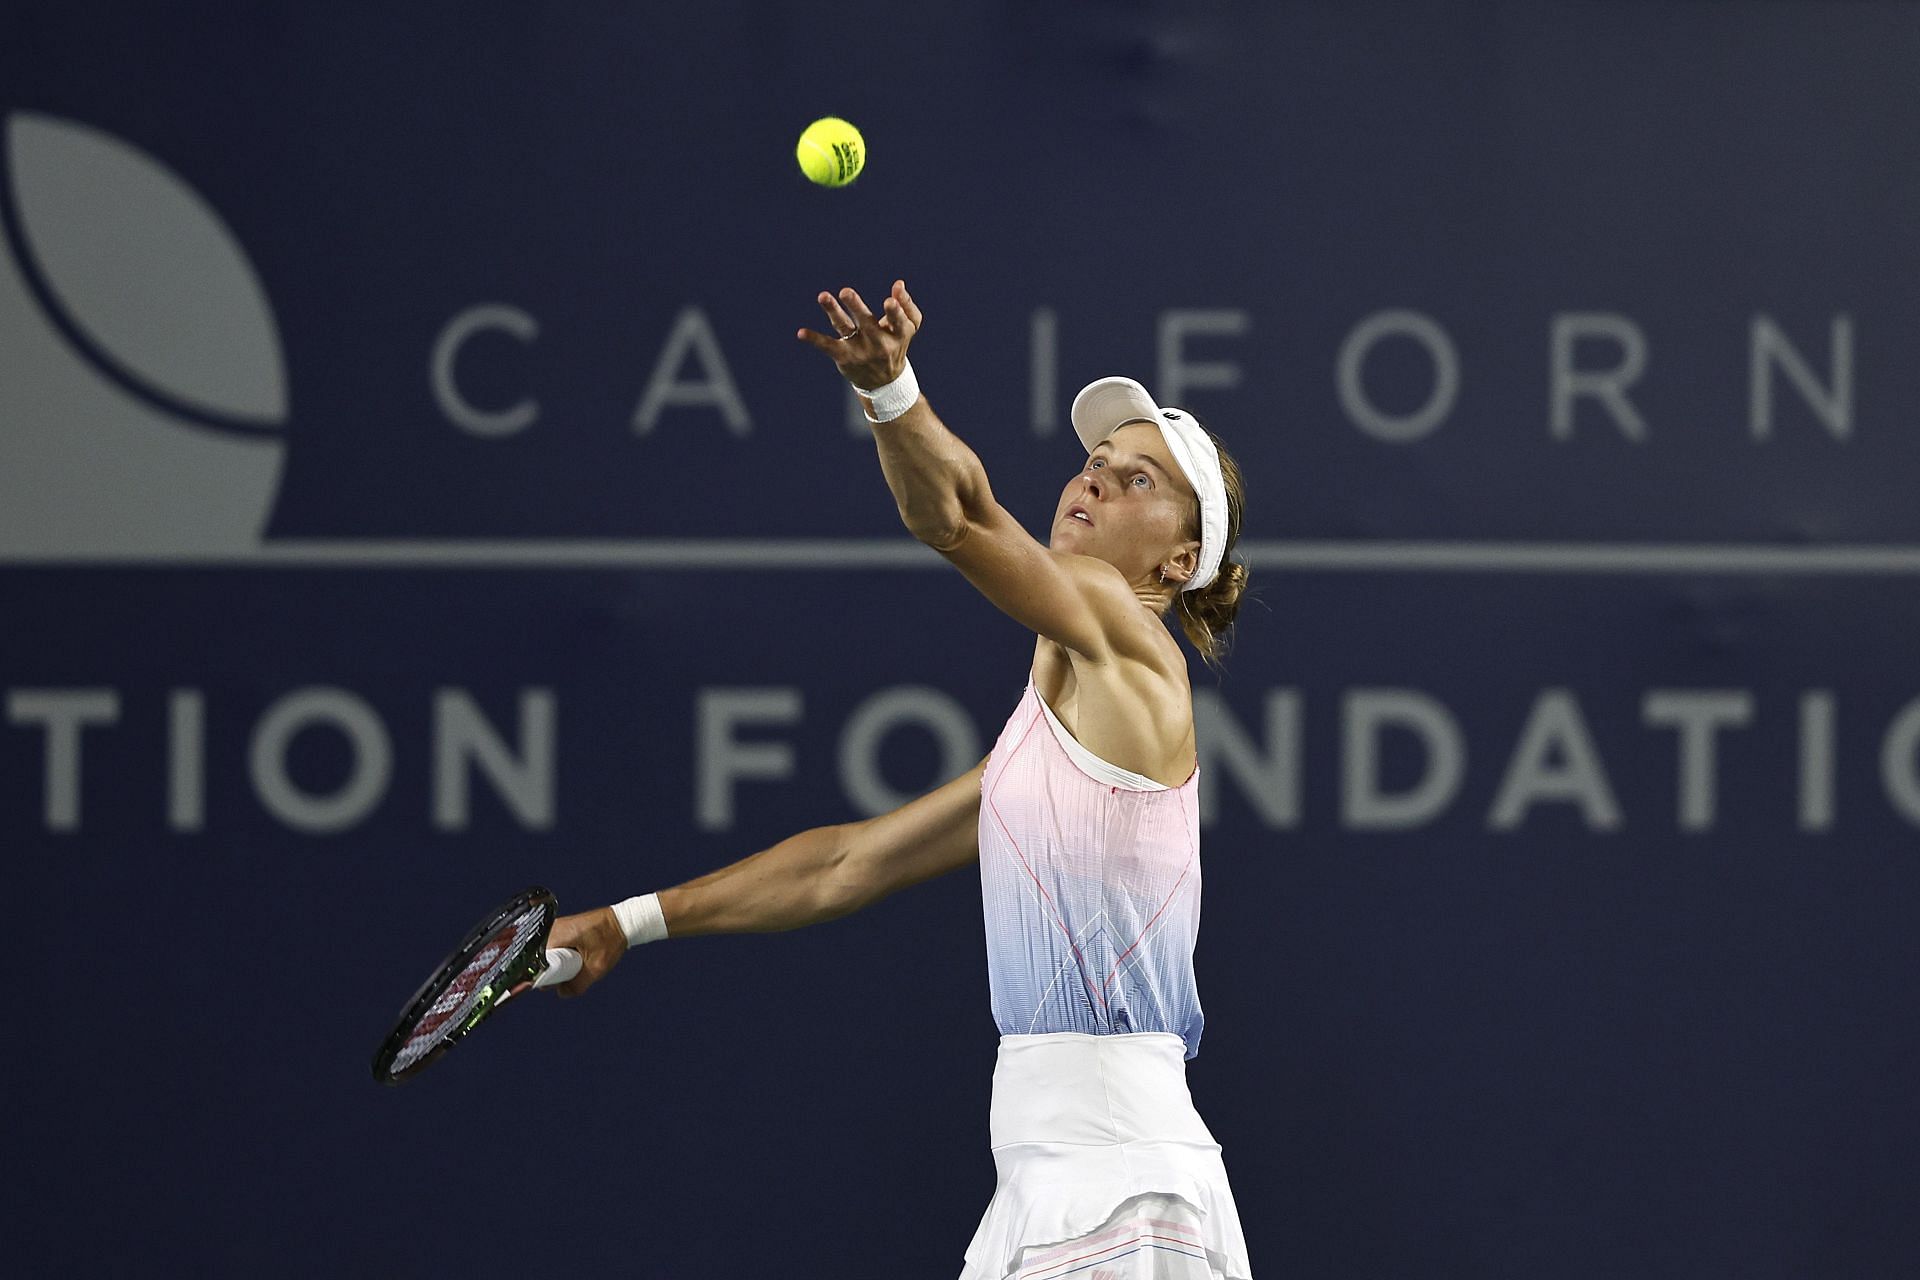 Samsonova serves during the San Diego Open